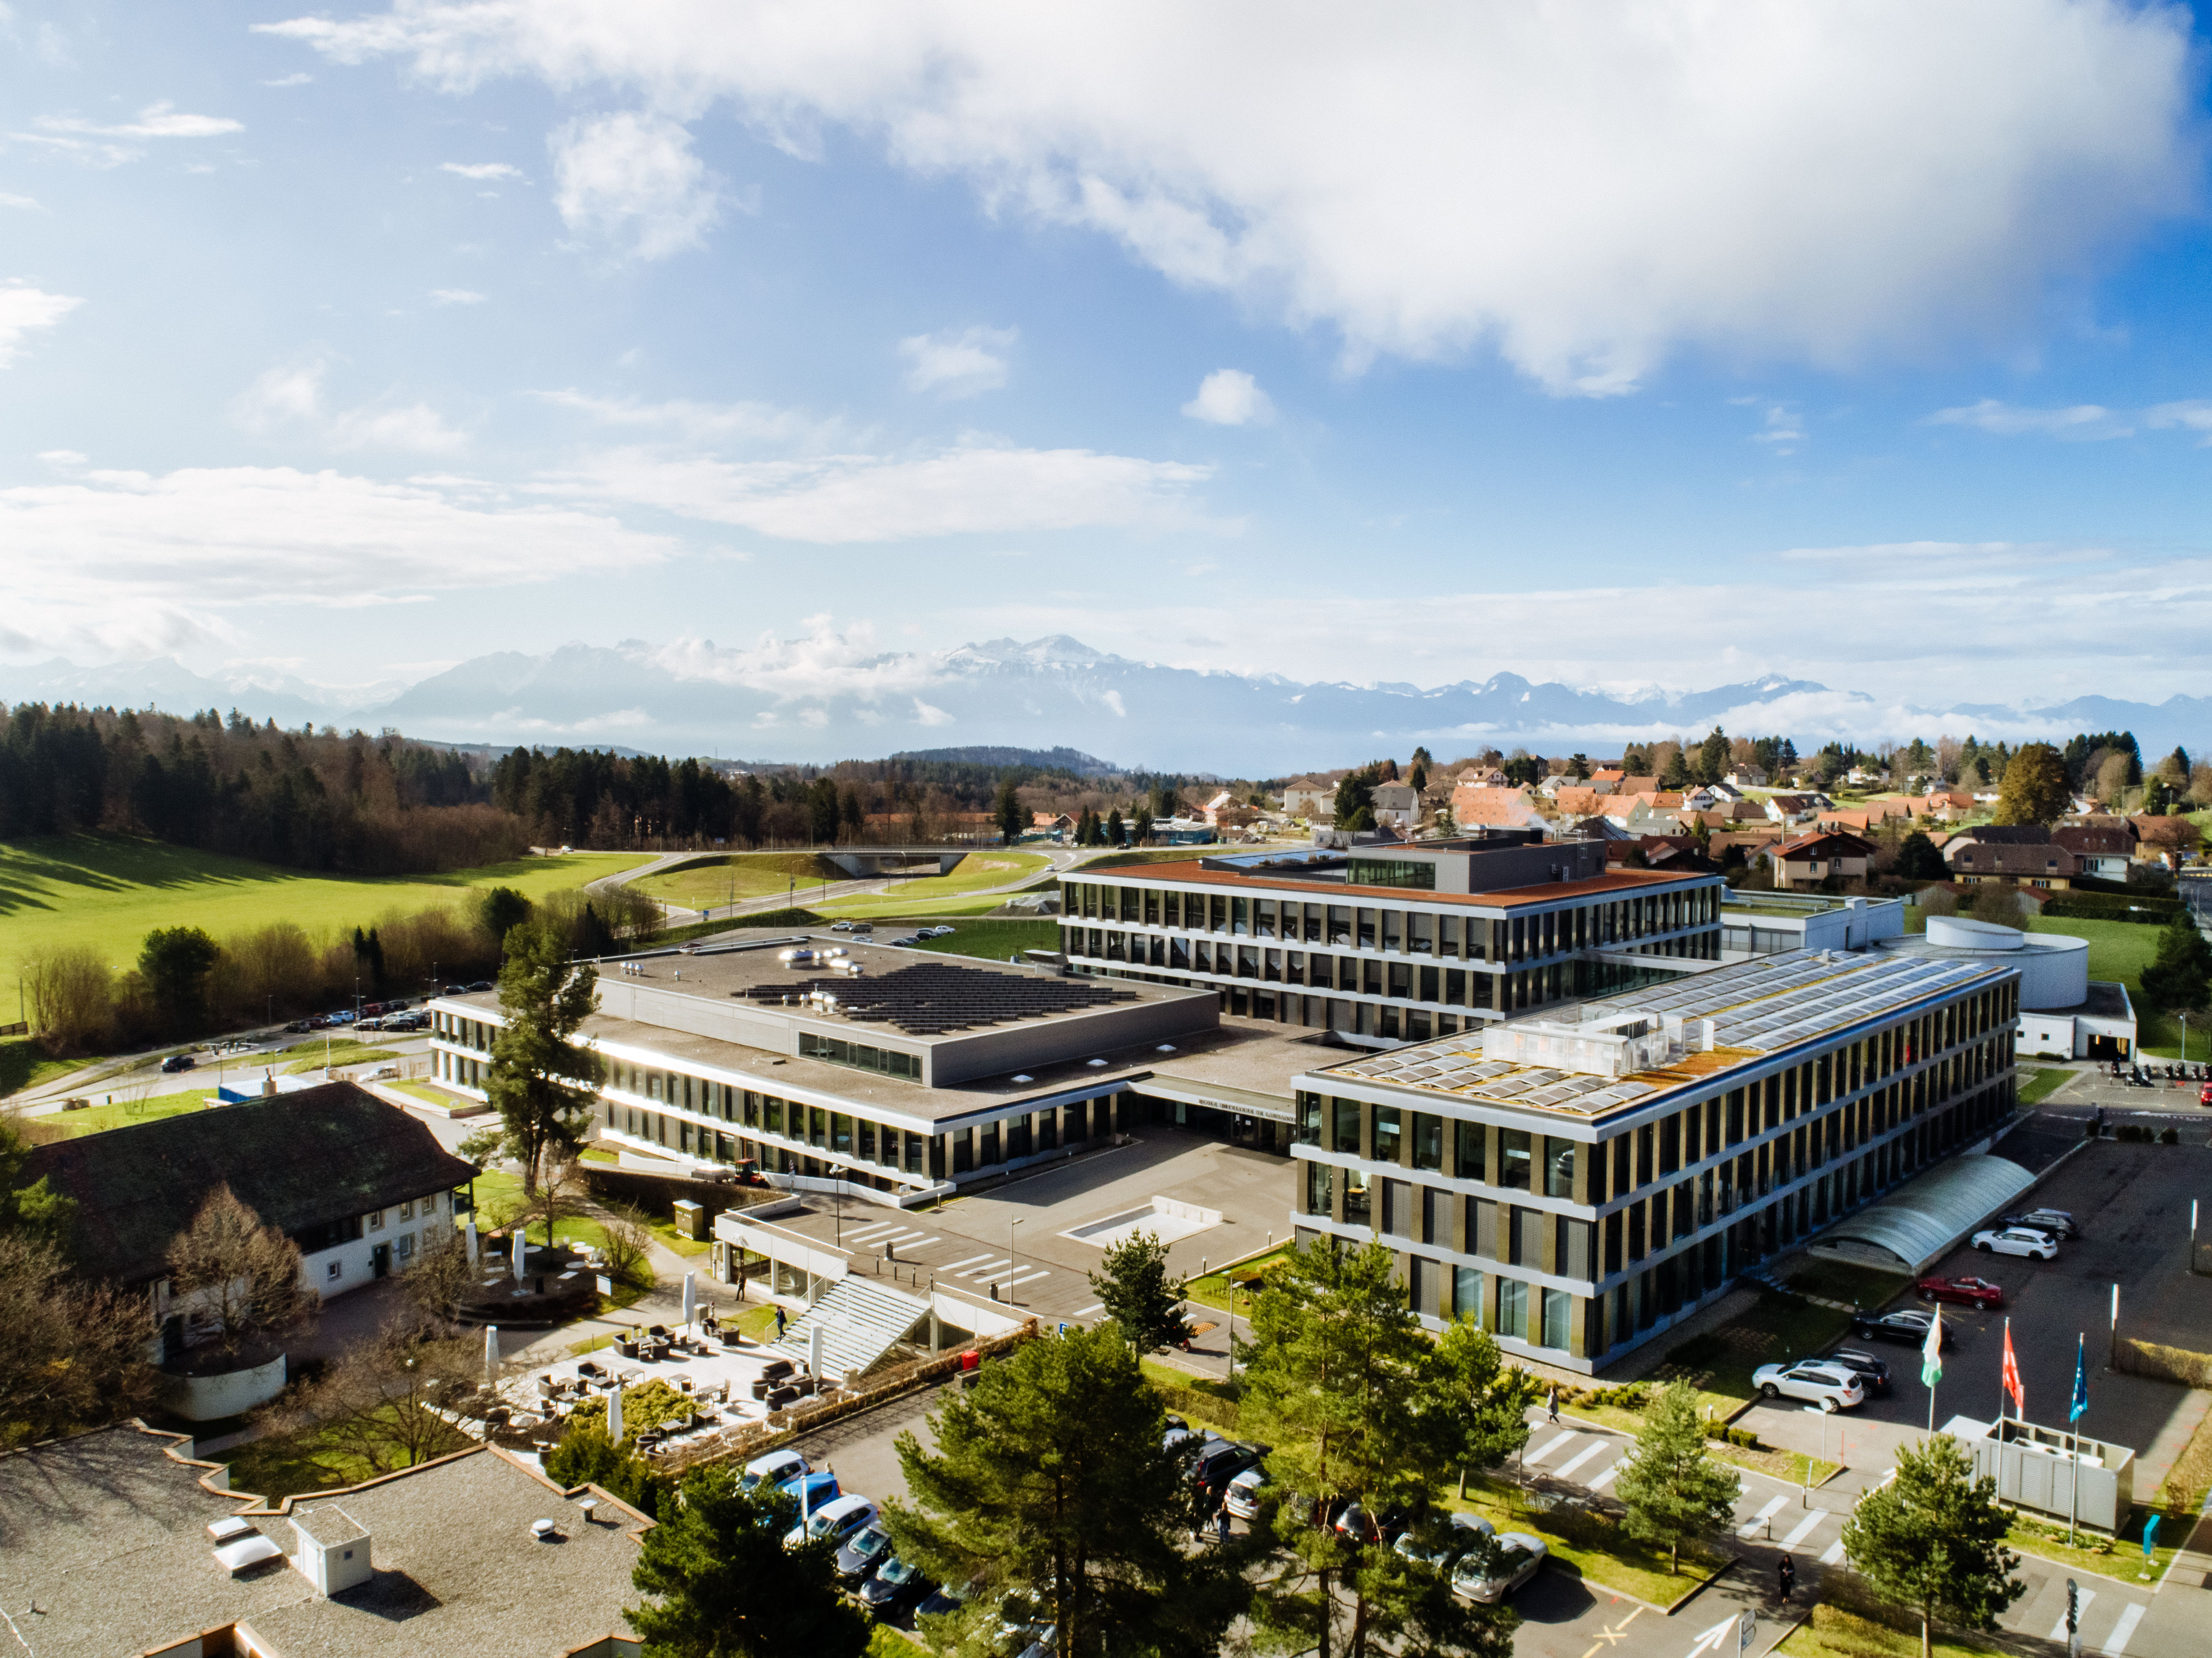 Les locaux et le superbe environnement de notre campus qui surplombe Lausanne offrent un cadre inspirant à nos étudiants.